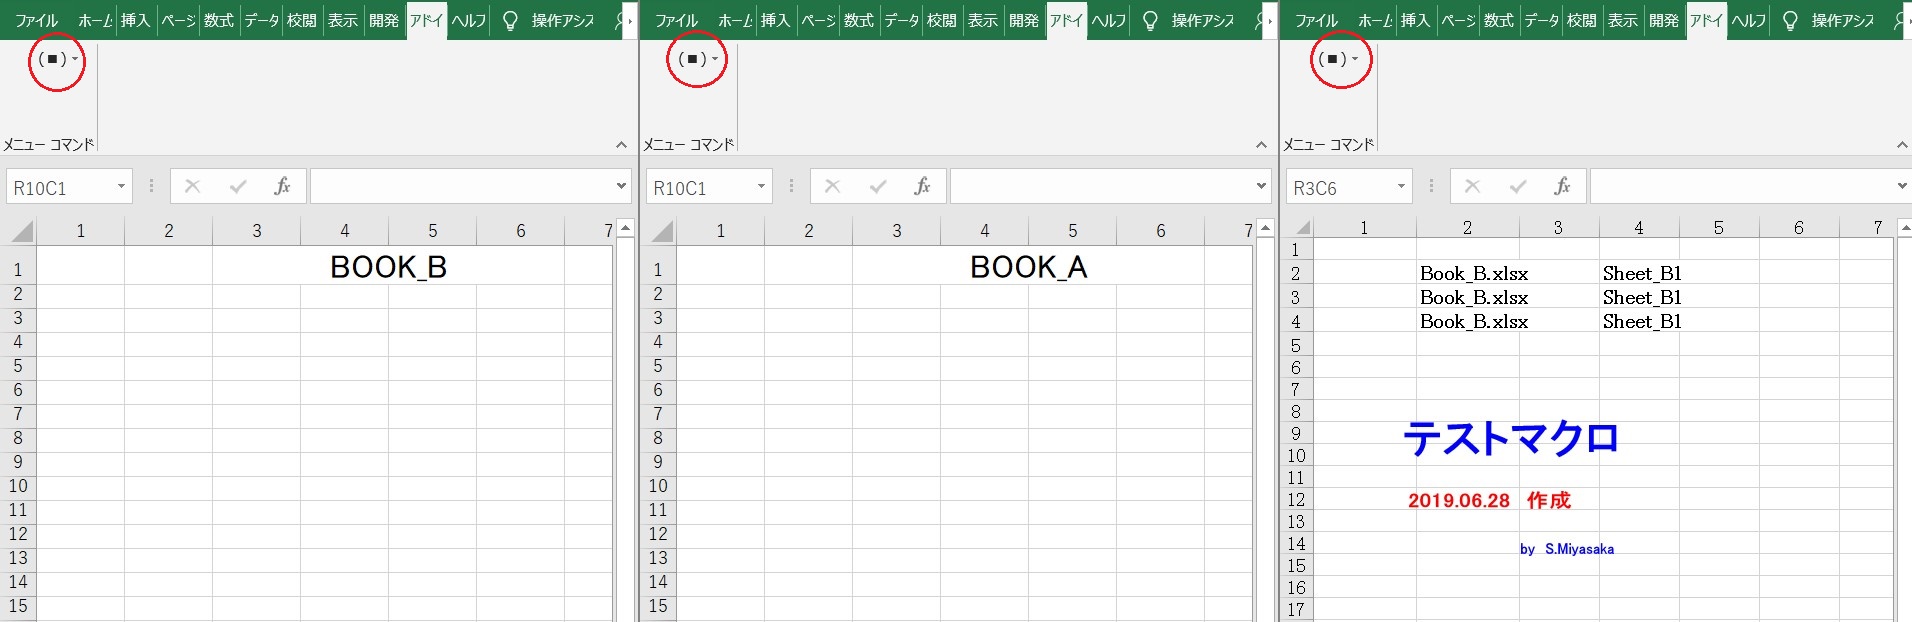 Excel 07 19 対応 すぐ使えるマクロのダウンロード